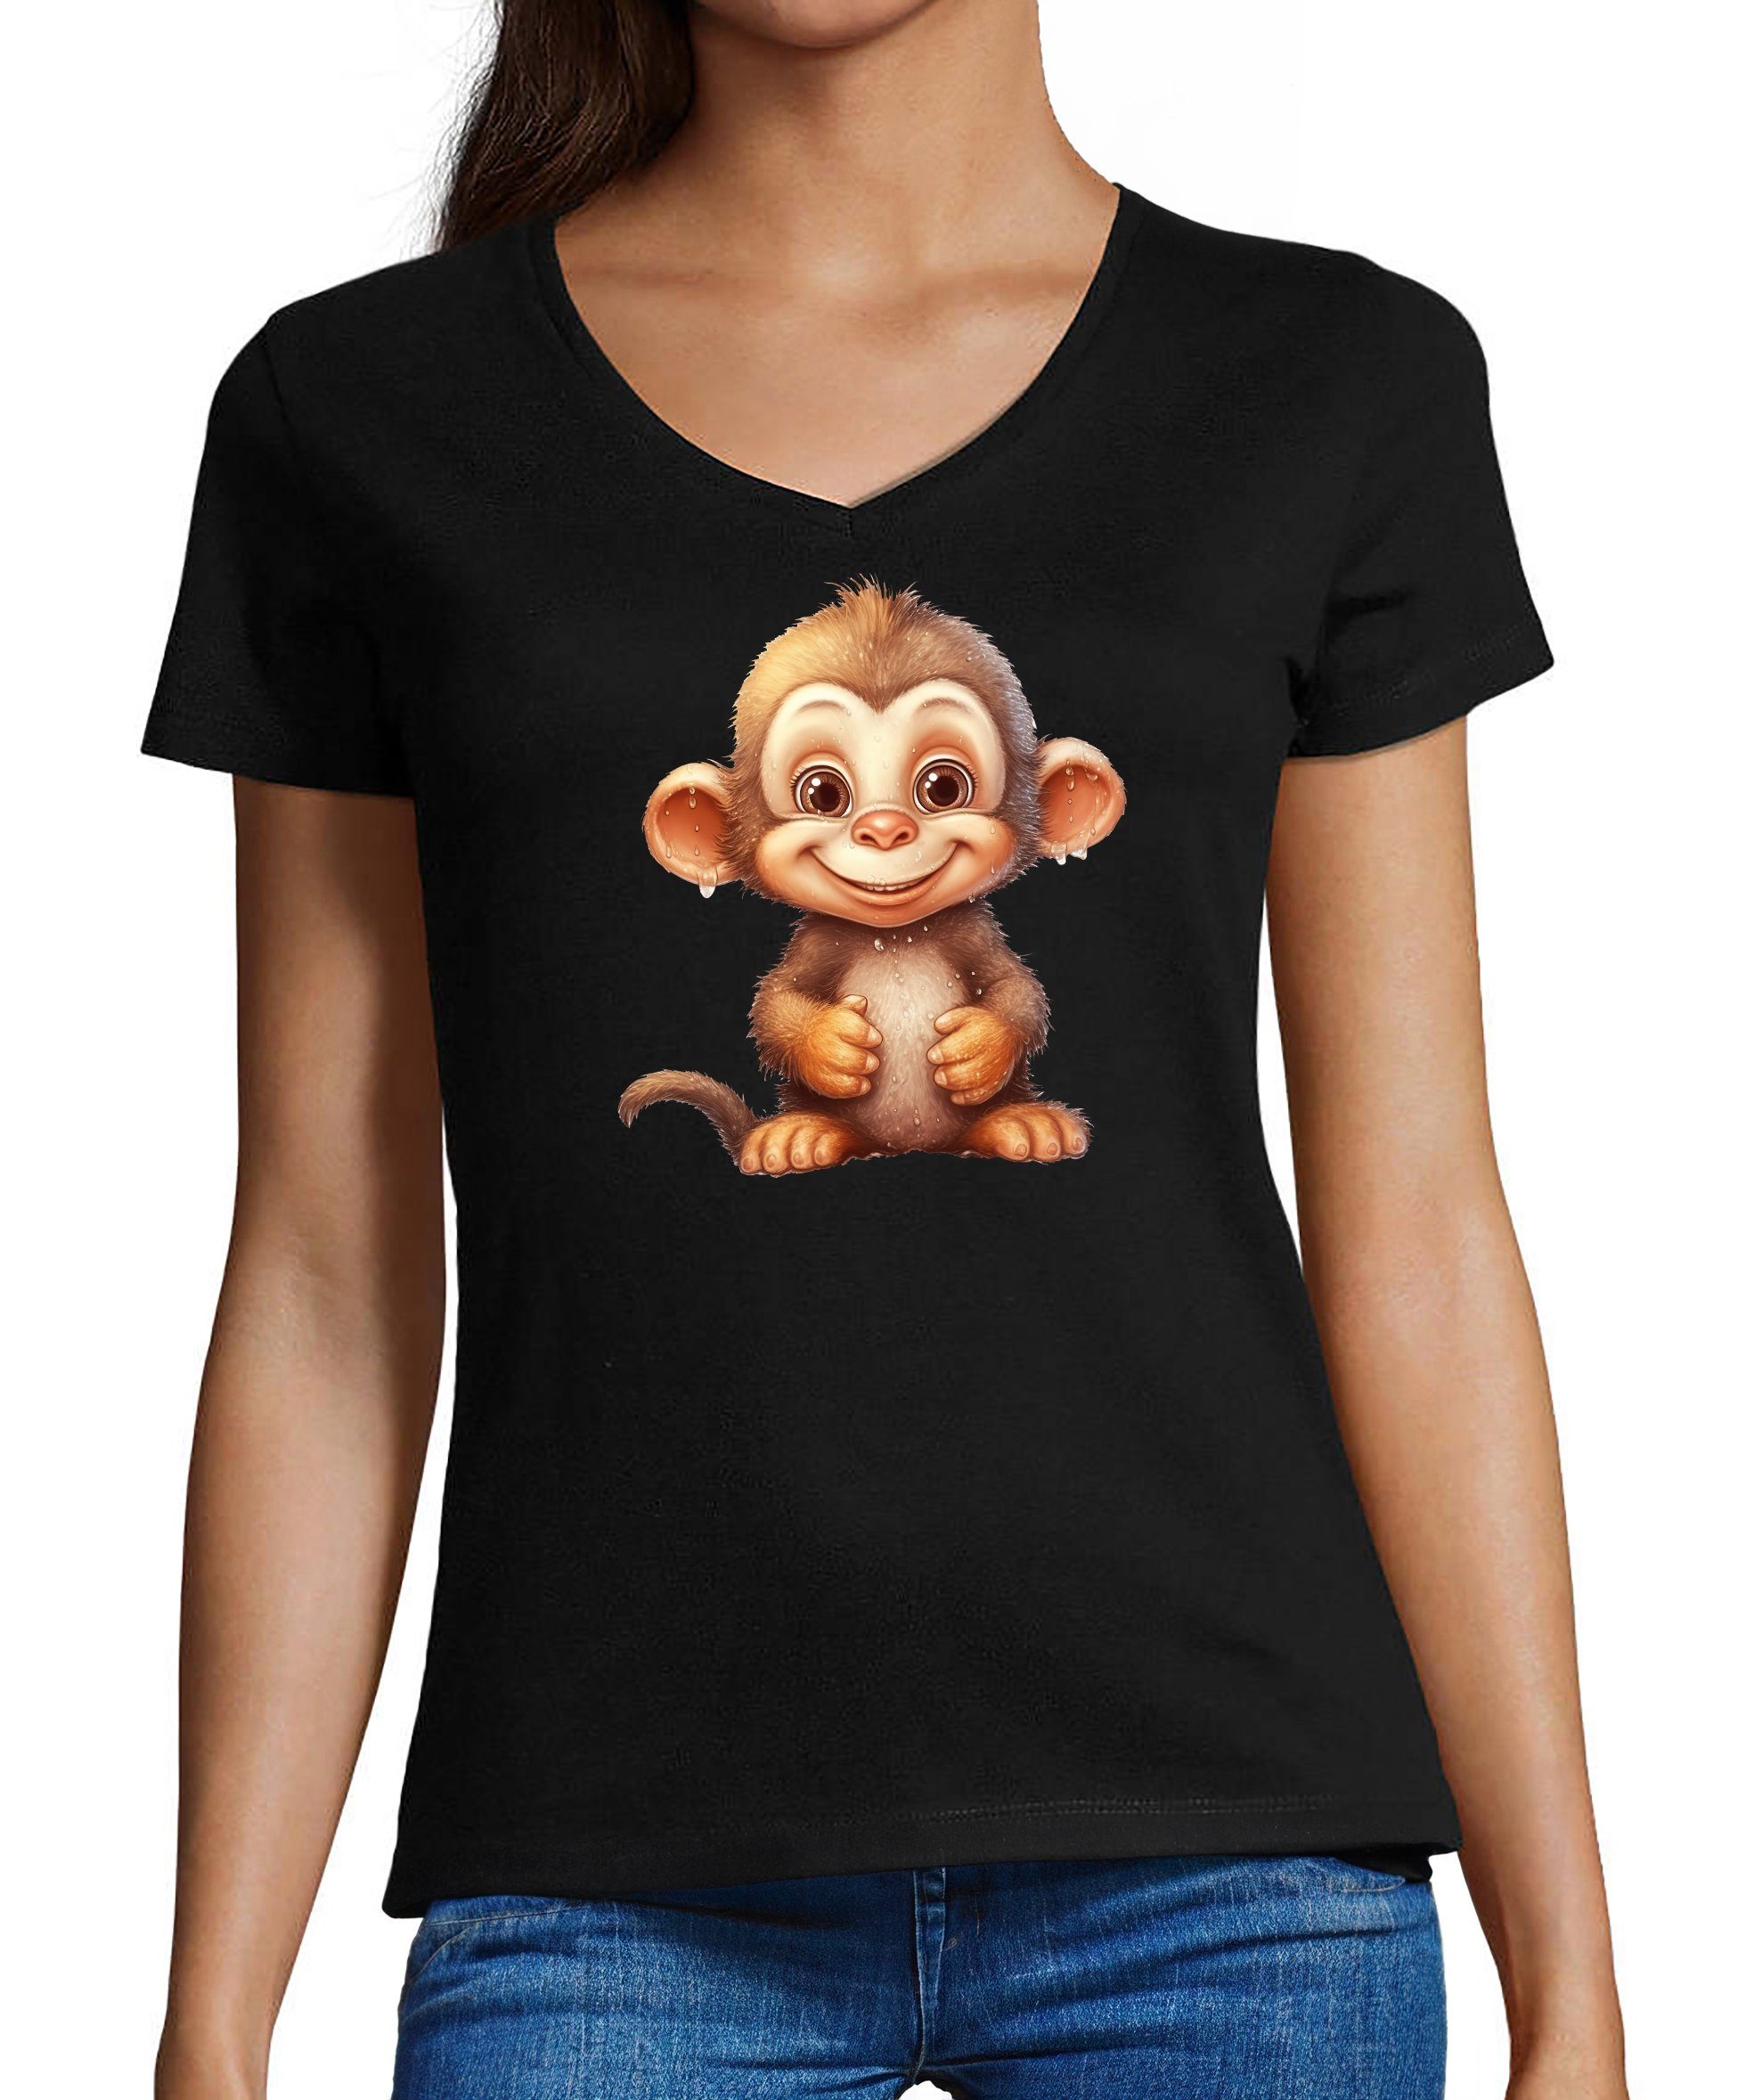 MyDesign24 T-Shirt Damen Wildtier Print Shirt - Baby Affe Schimpanse V-Ausschnitt Baumwollshirt mit Aufdruck Slim Fit schwarz